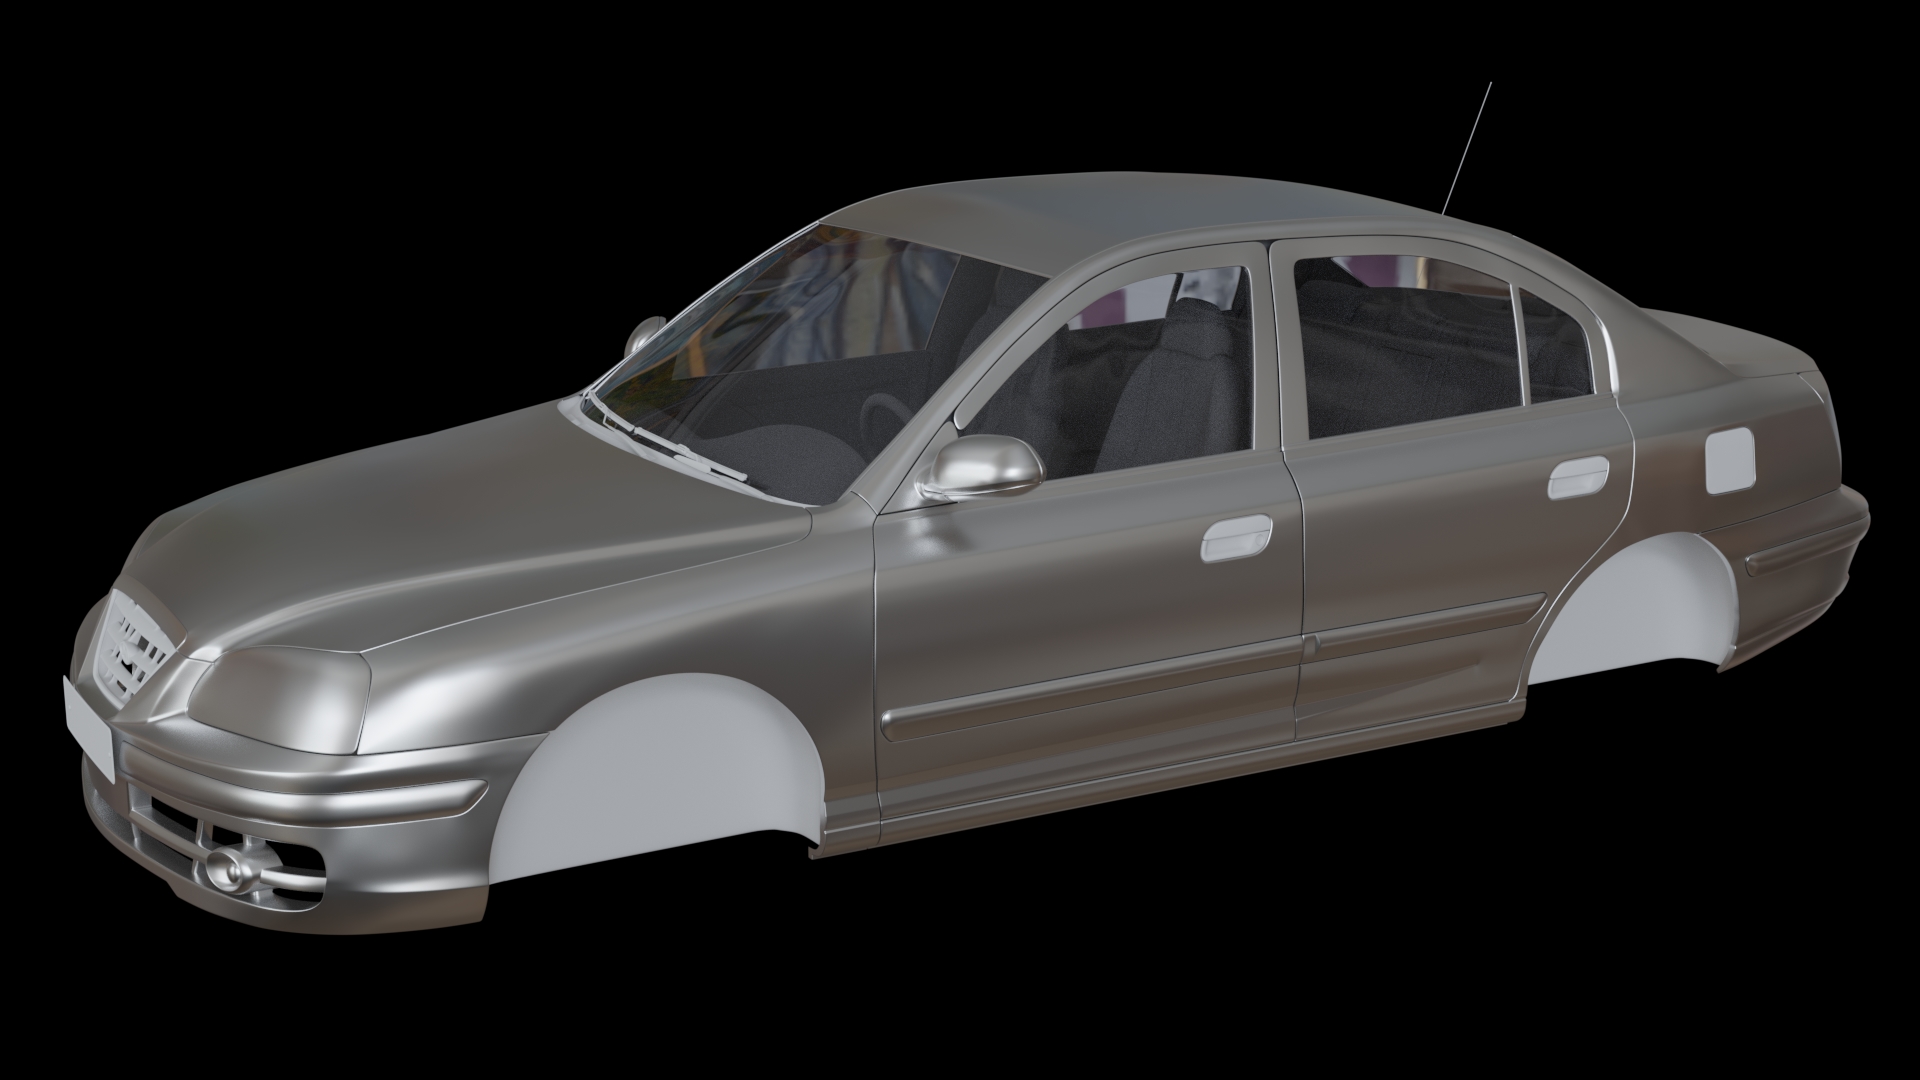 3D car render challenge 2019